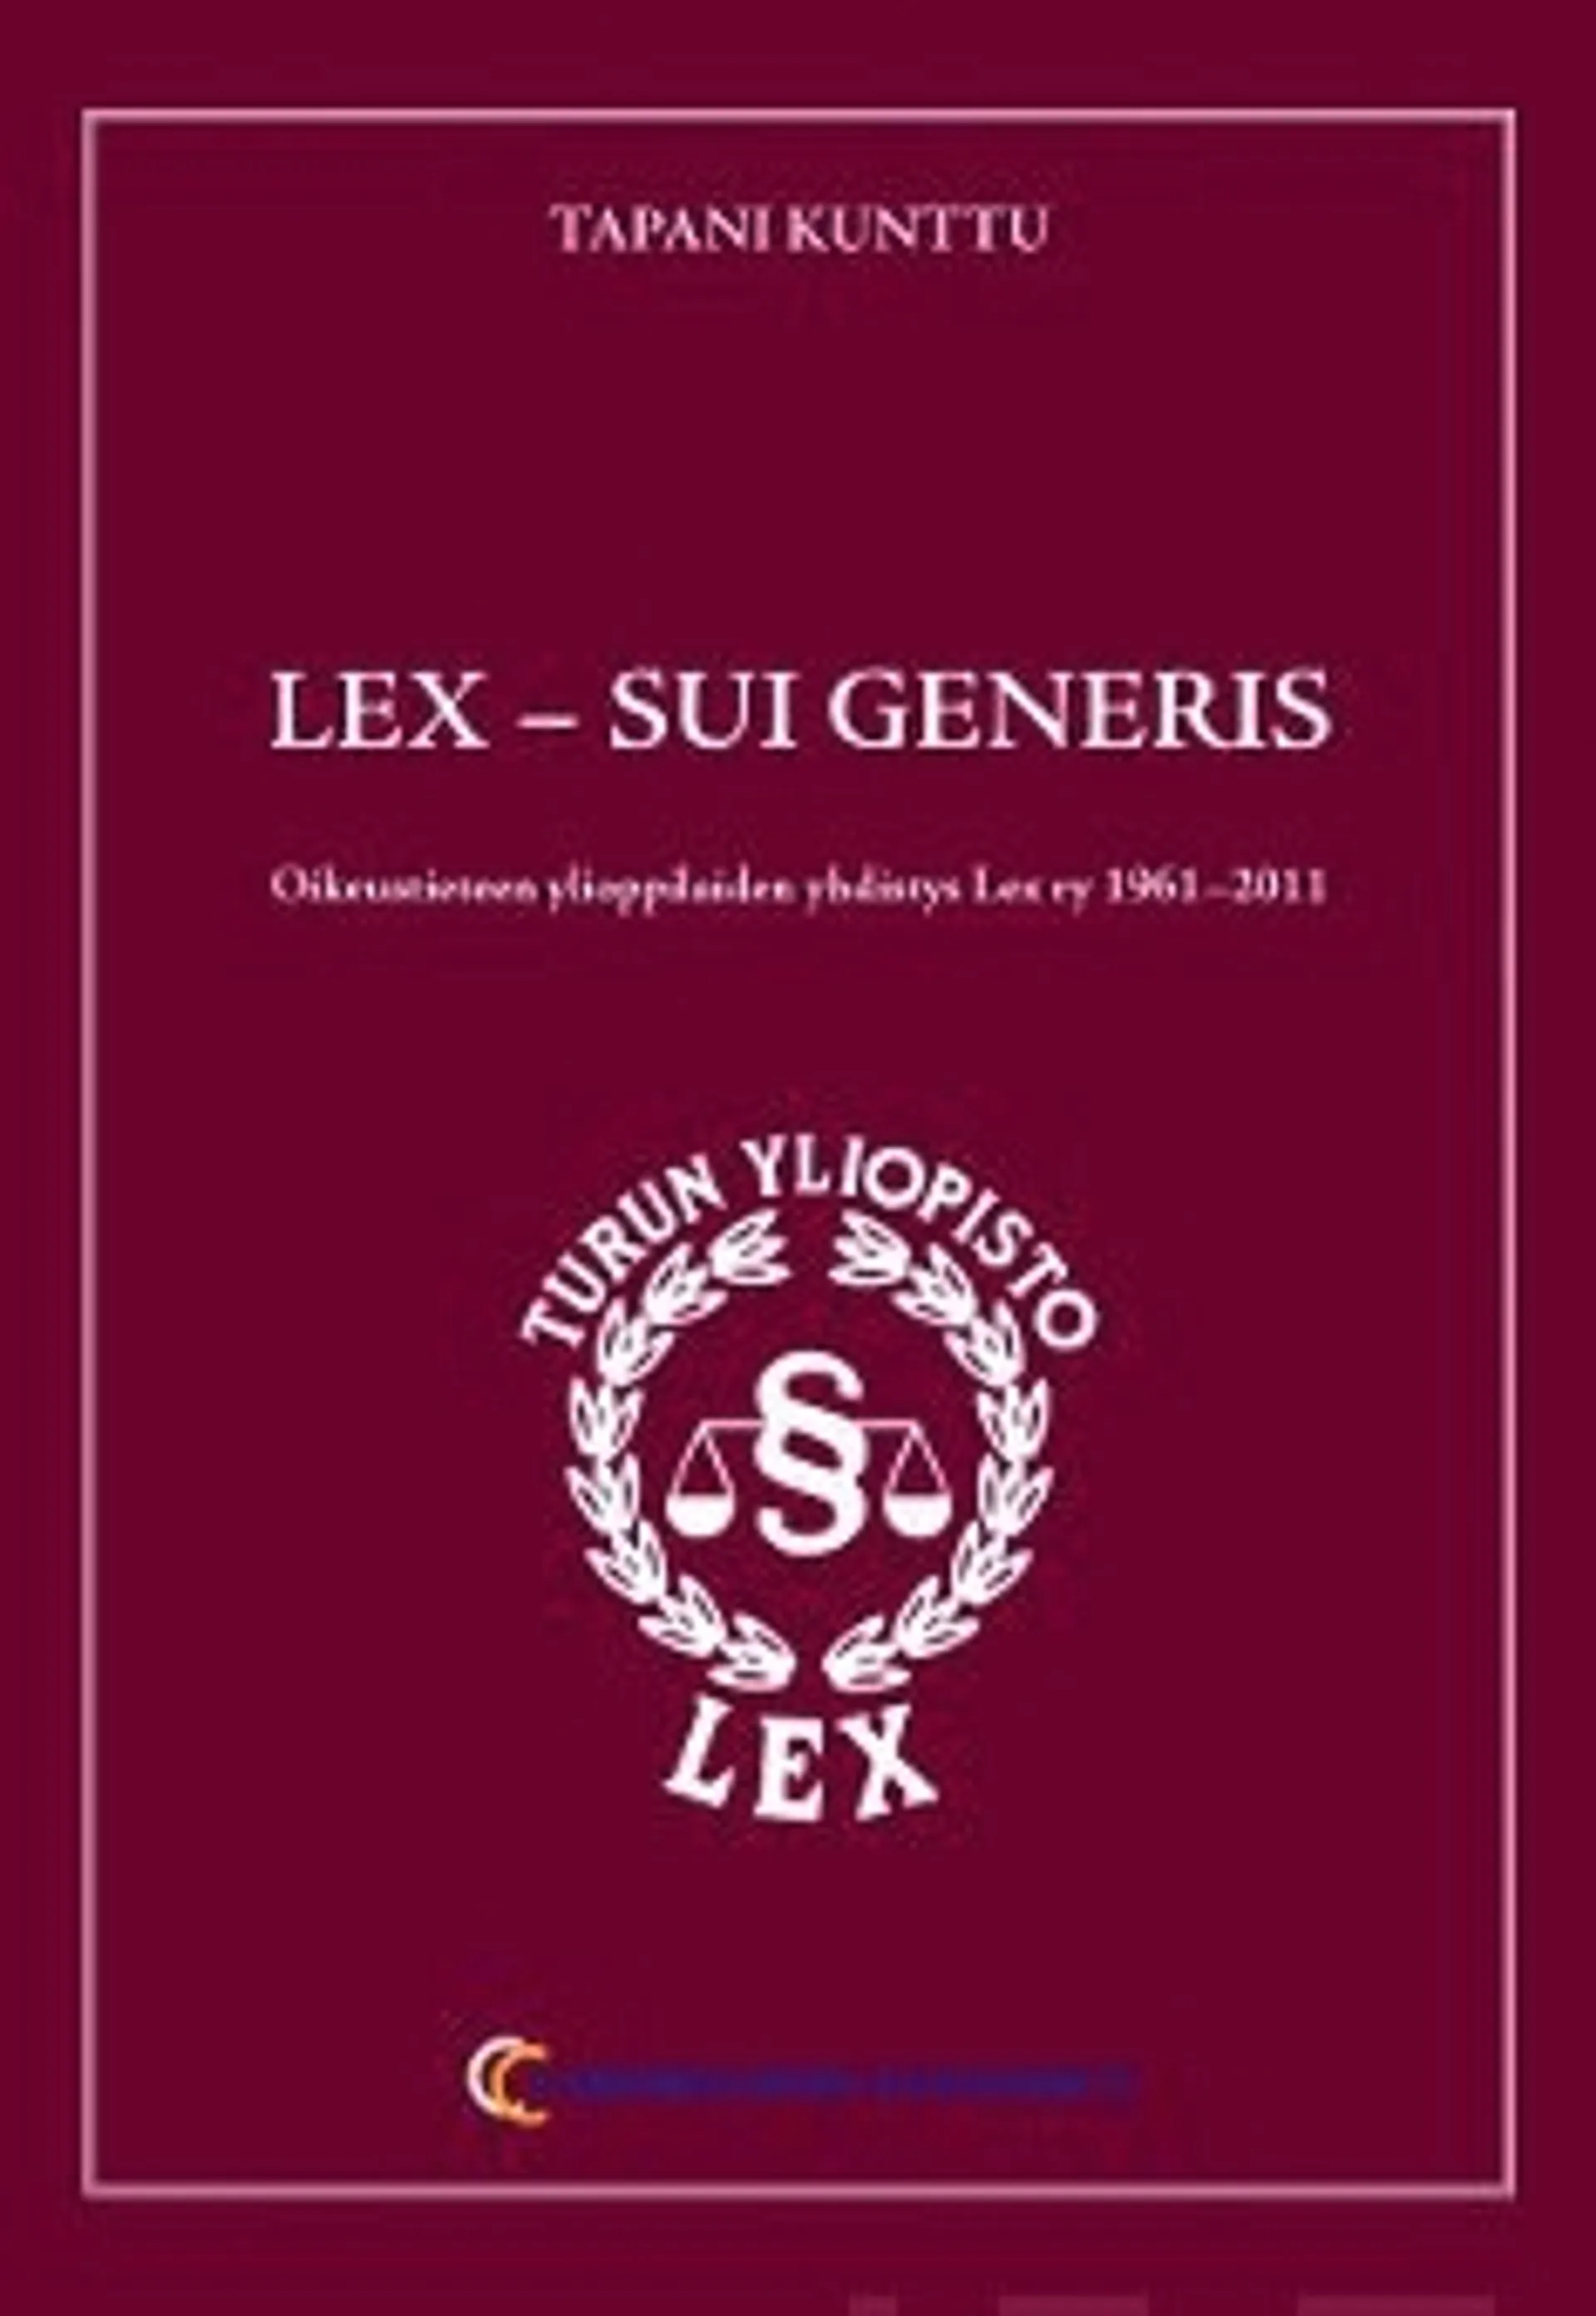 Lex - sui generis